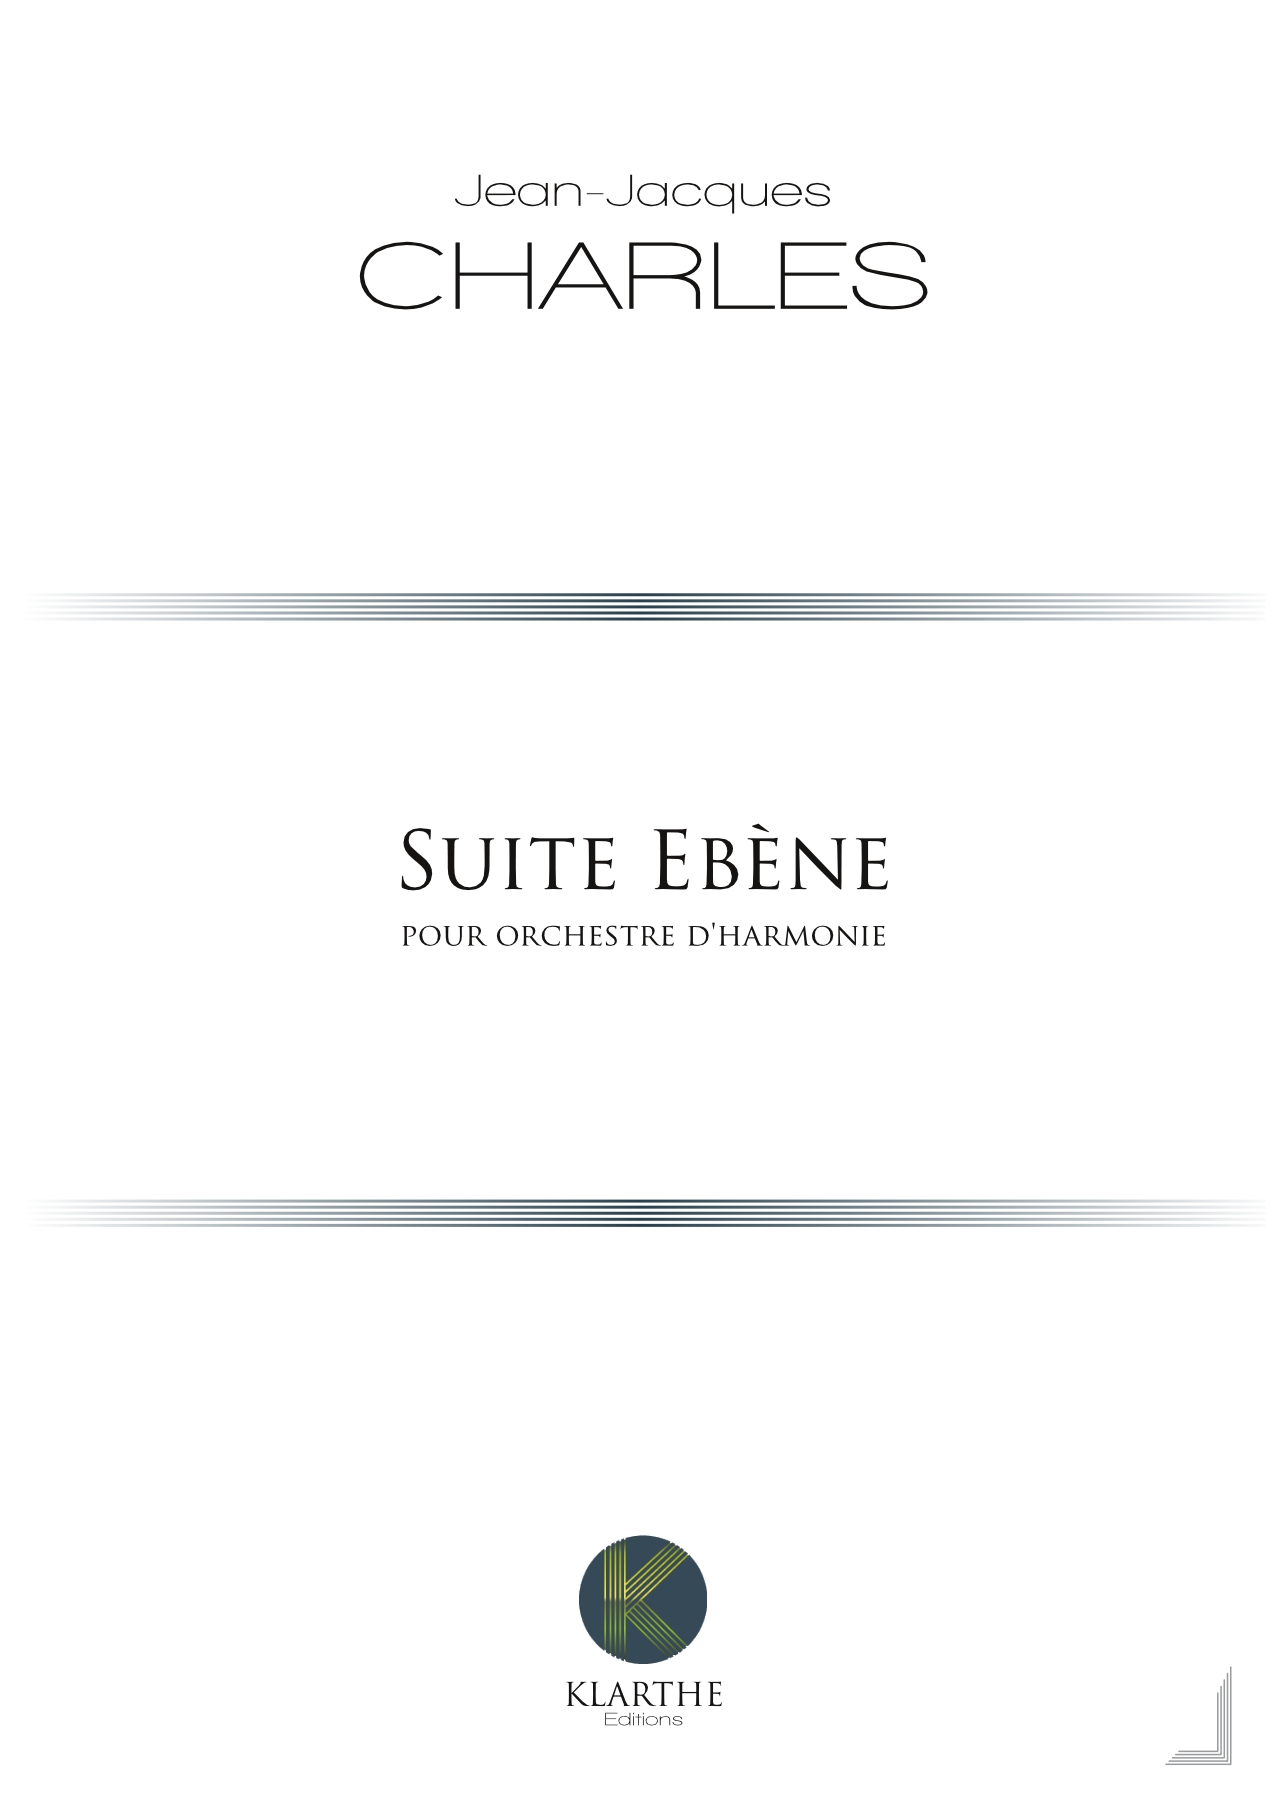 Suite Ebène (CHARLES JEAN-JACQUES)